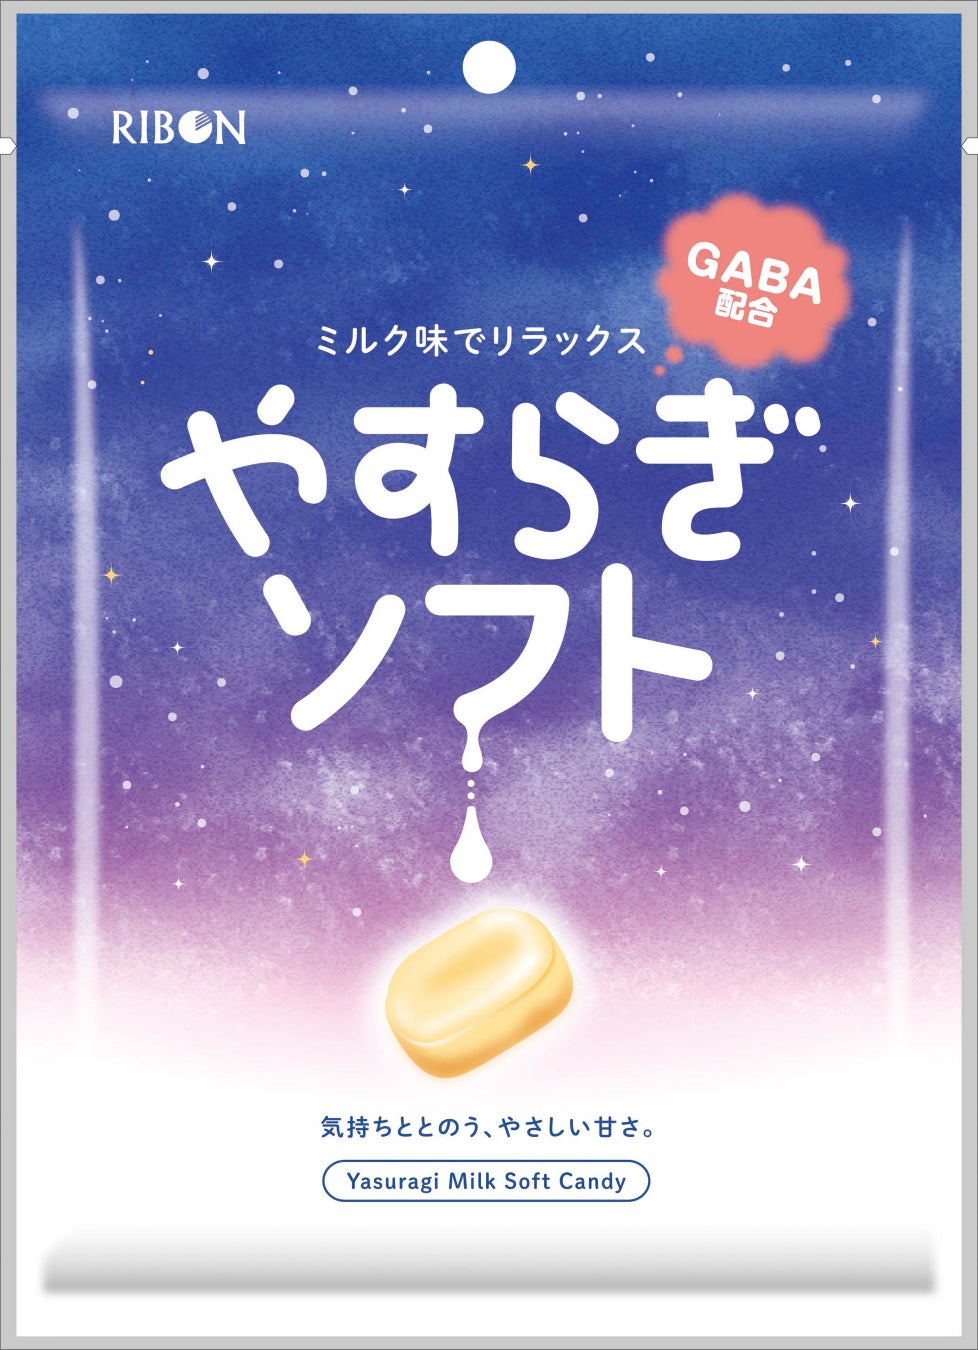 世界初のミシュラン1つ星ラーメン店 Japanese Soba Noodles 蔦×ベビースター登場！